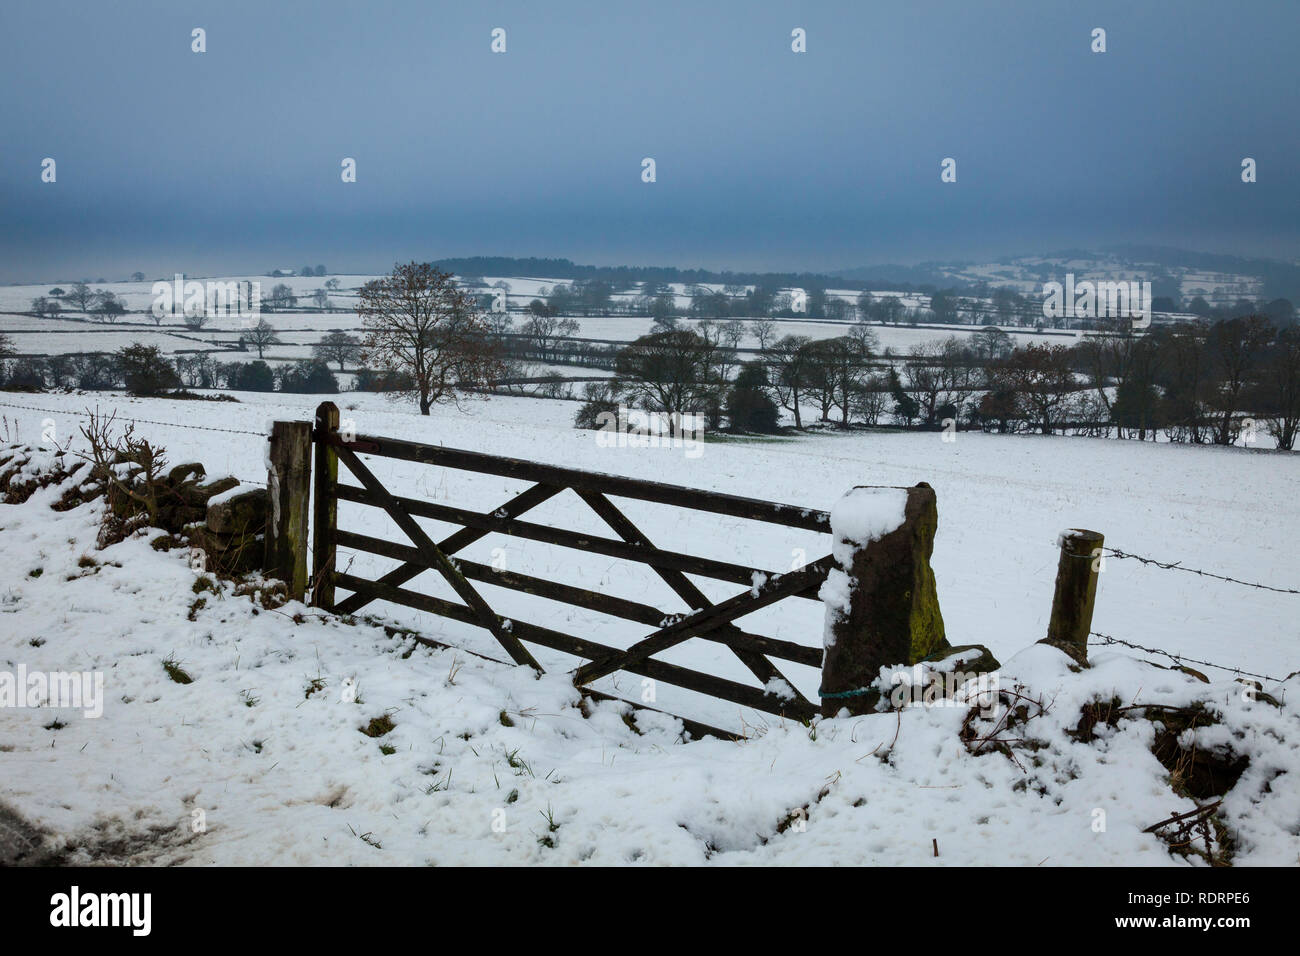 Superiore di Holloway, Derbyshire, Regno Unito 19 gennaio 2019. Durante la notte la neve crea un tetro paesaggio invernale nel Derbyshire Dales vicino al villaggio di Upper Holloway. Credito: Mark Richardson/Alamy Live News Foto Stock